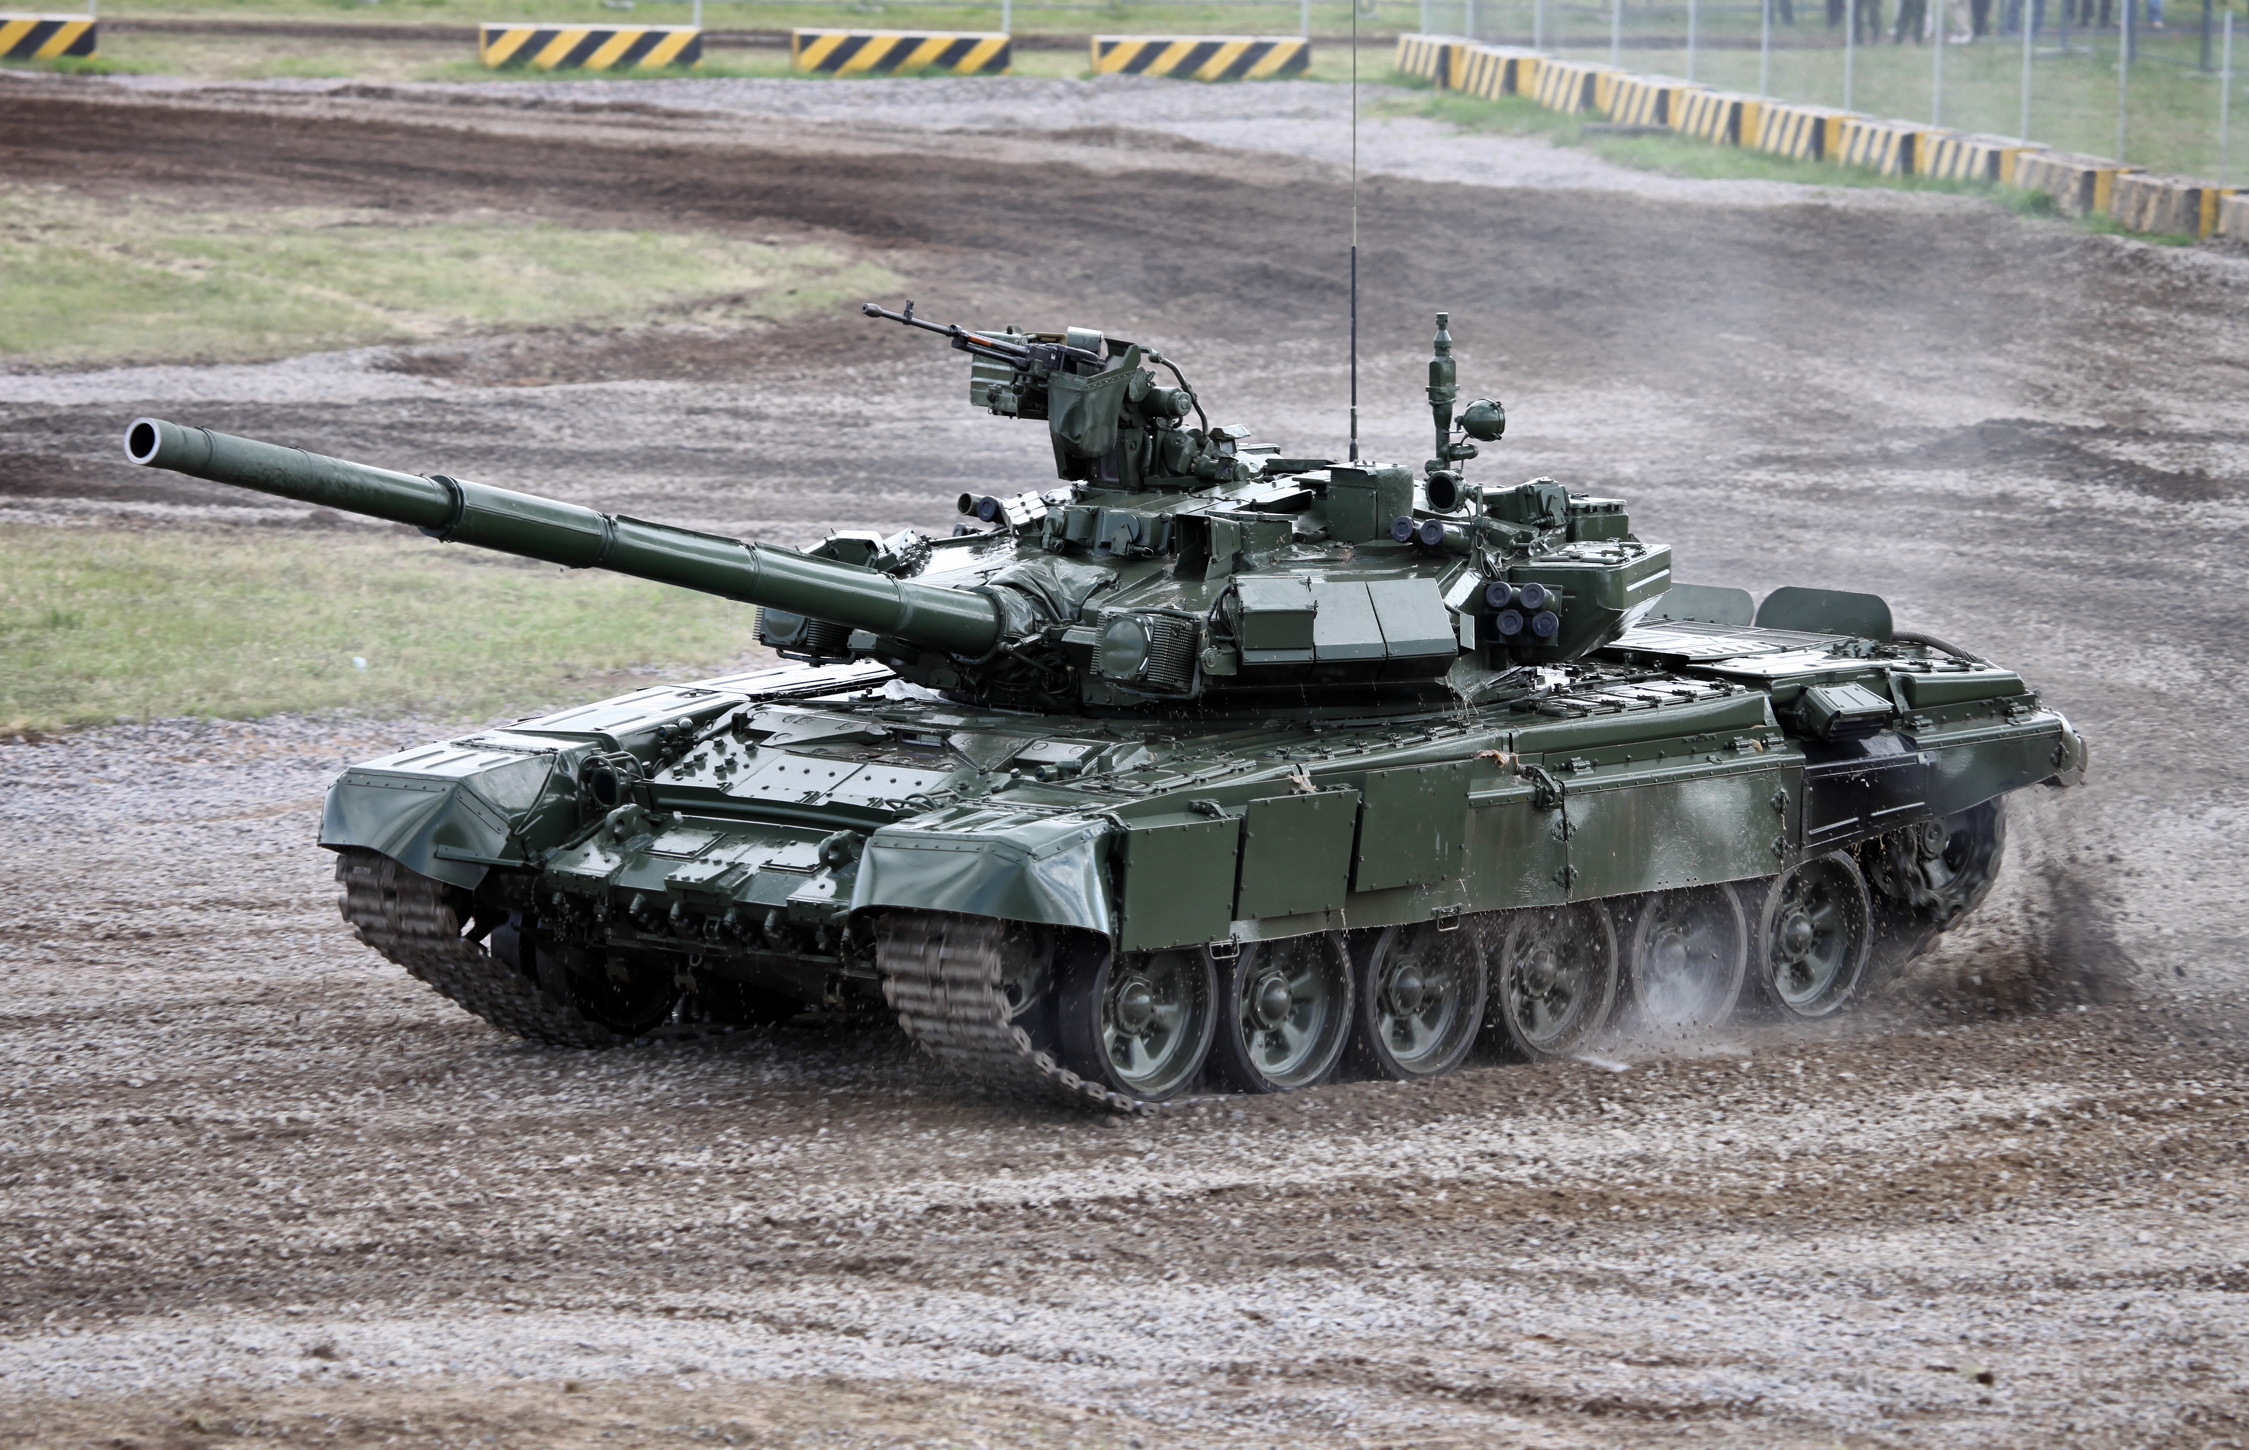 T-90 là một trong những chiếc xe tăng cao cấp nhất trên thế giới. Bạn có muốn thưởng thức những hình ảnh chi tiết về T-90 và cùng khám phá nó đã có những cải tiến tuyệt vời nào? Hãy nhấn vào hình ảnh để xem ngay!